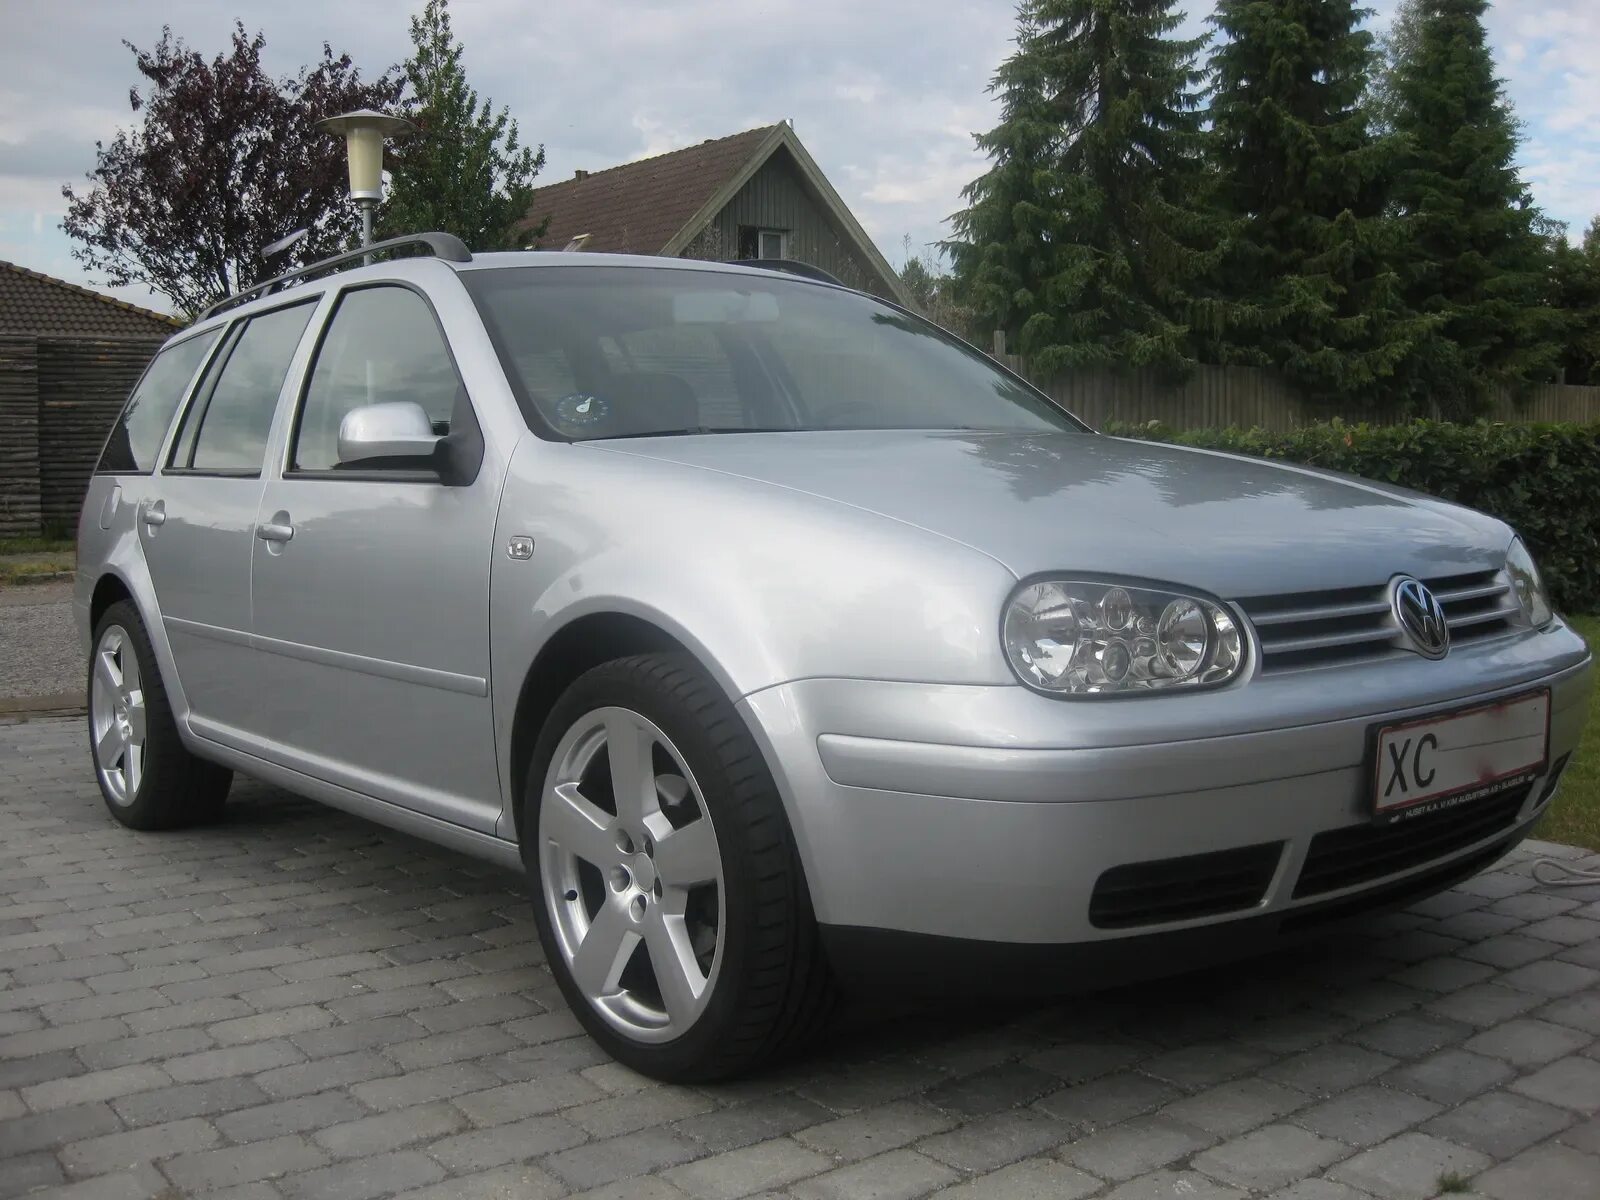 Фольксваген 2004 купить. Фольксваген гольф 2004. Фольксваген гольф 4 2004. Фольксваген гольф 3 2004. Volkswagen Golf 4 2004 Pearl.